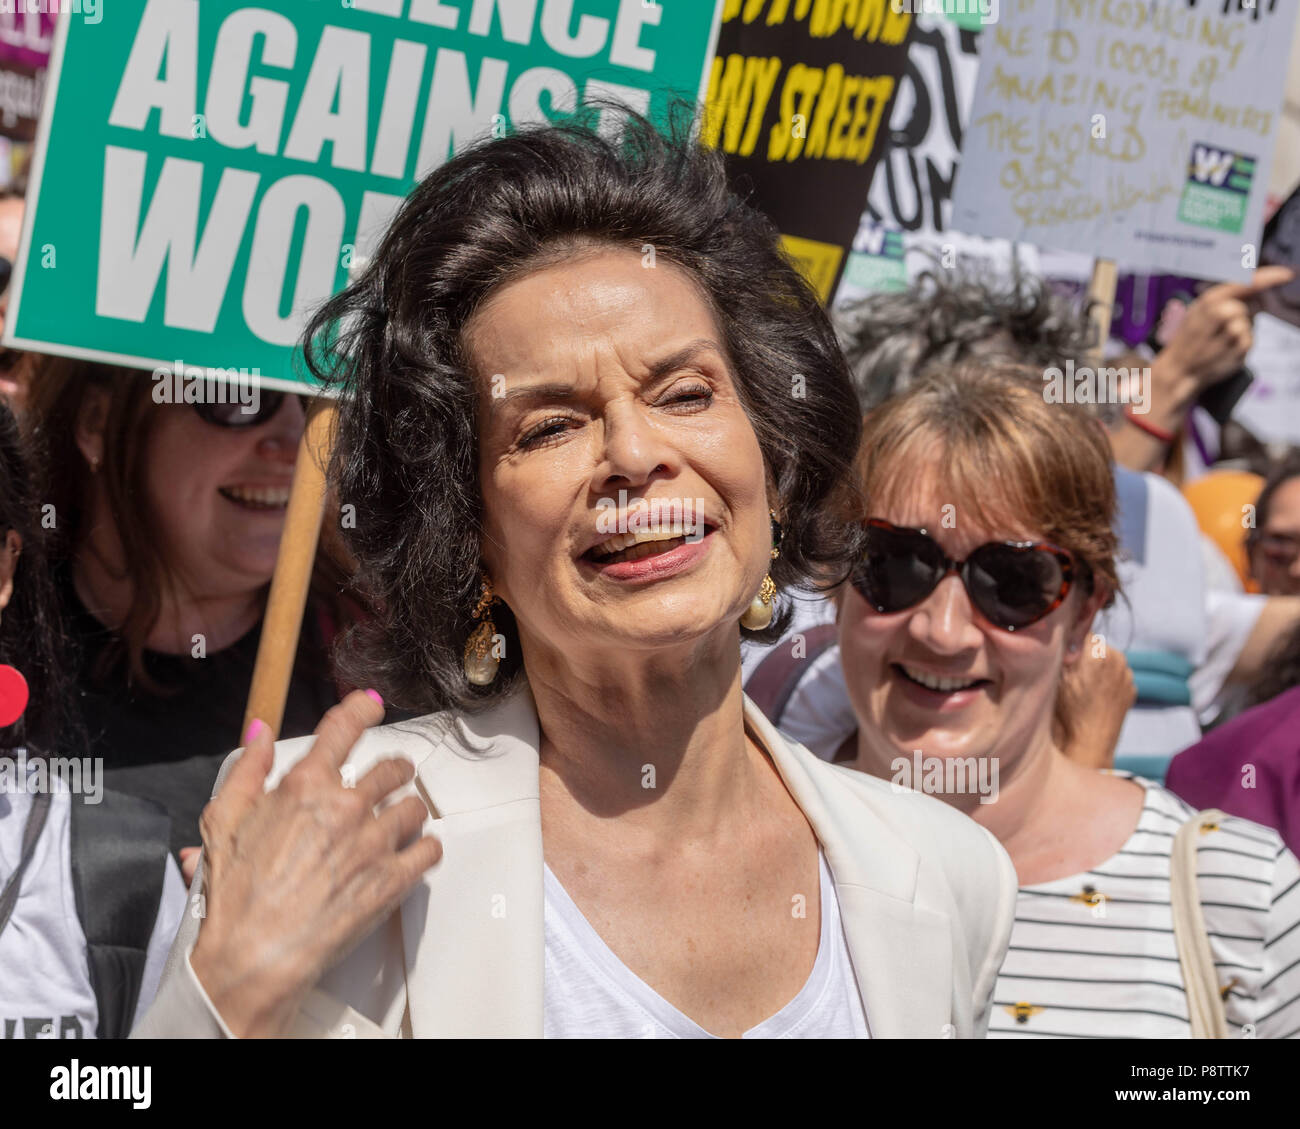 Londres, le 13 Juillet 2018 Mars femme -Mettre l'anti bruit démonstration trump illustré Bianca Jagger Credit Ian Davidson/Alamy Live News Banque D'Images